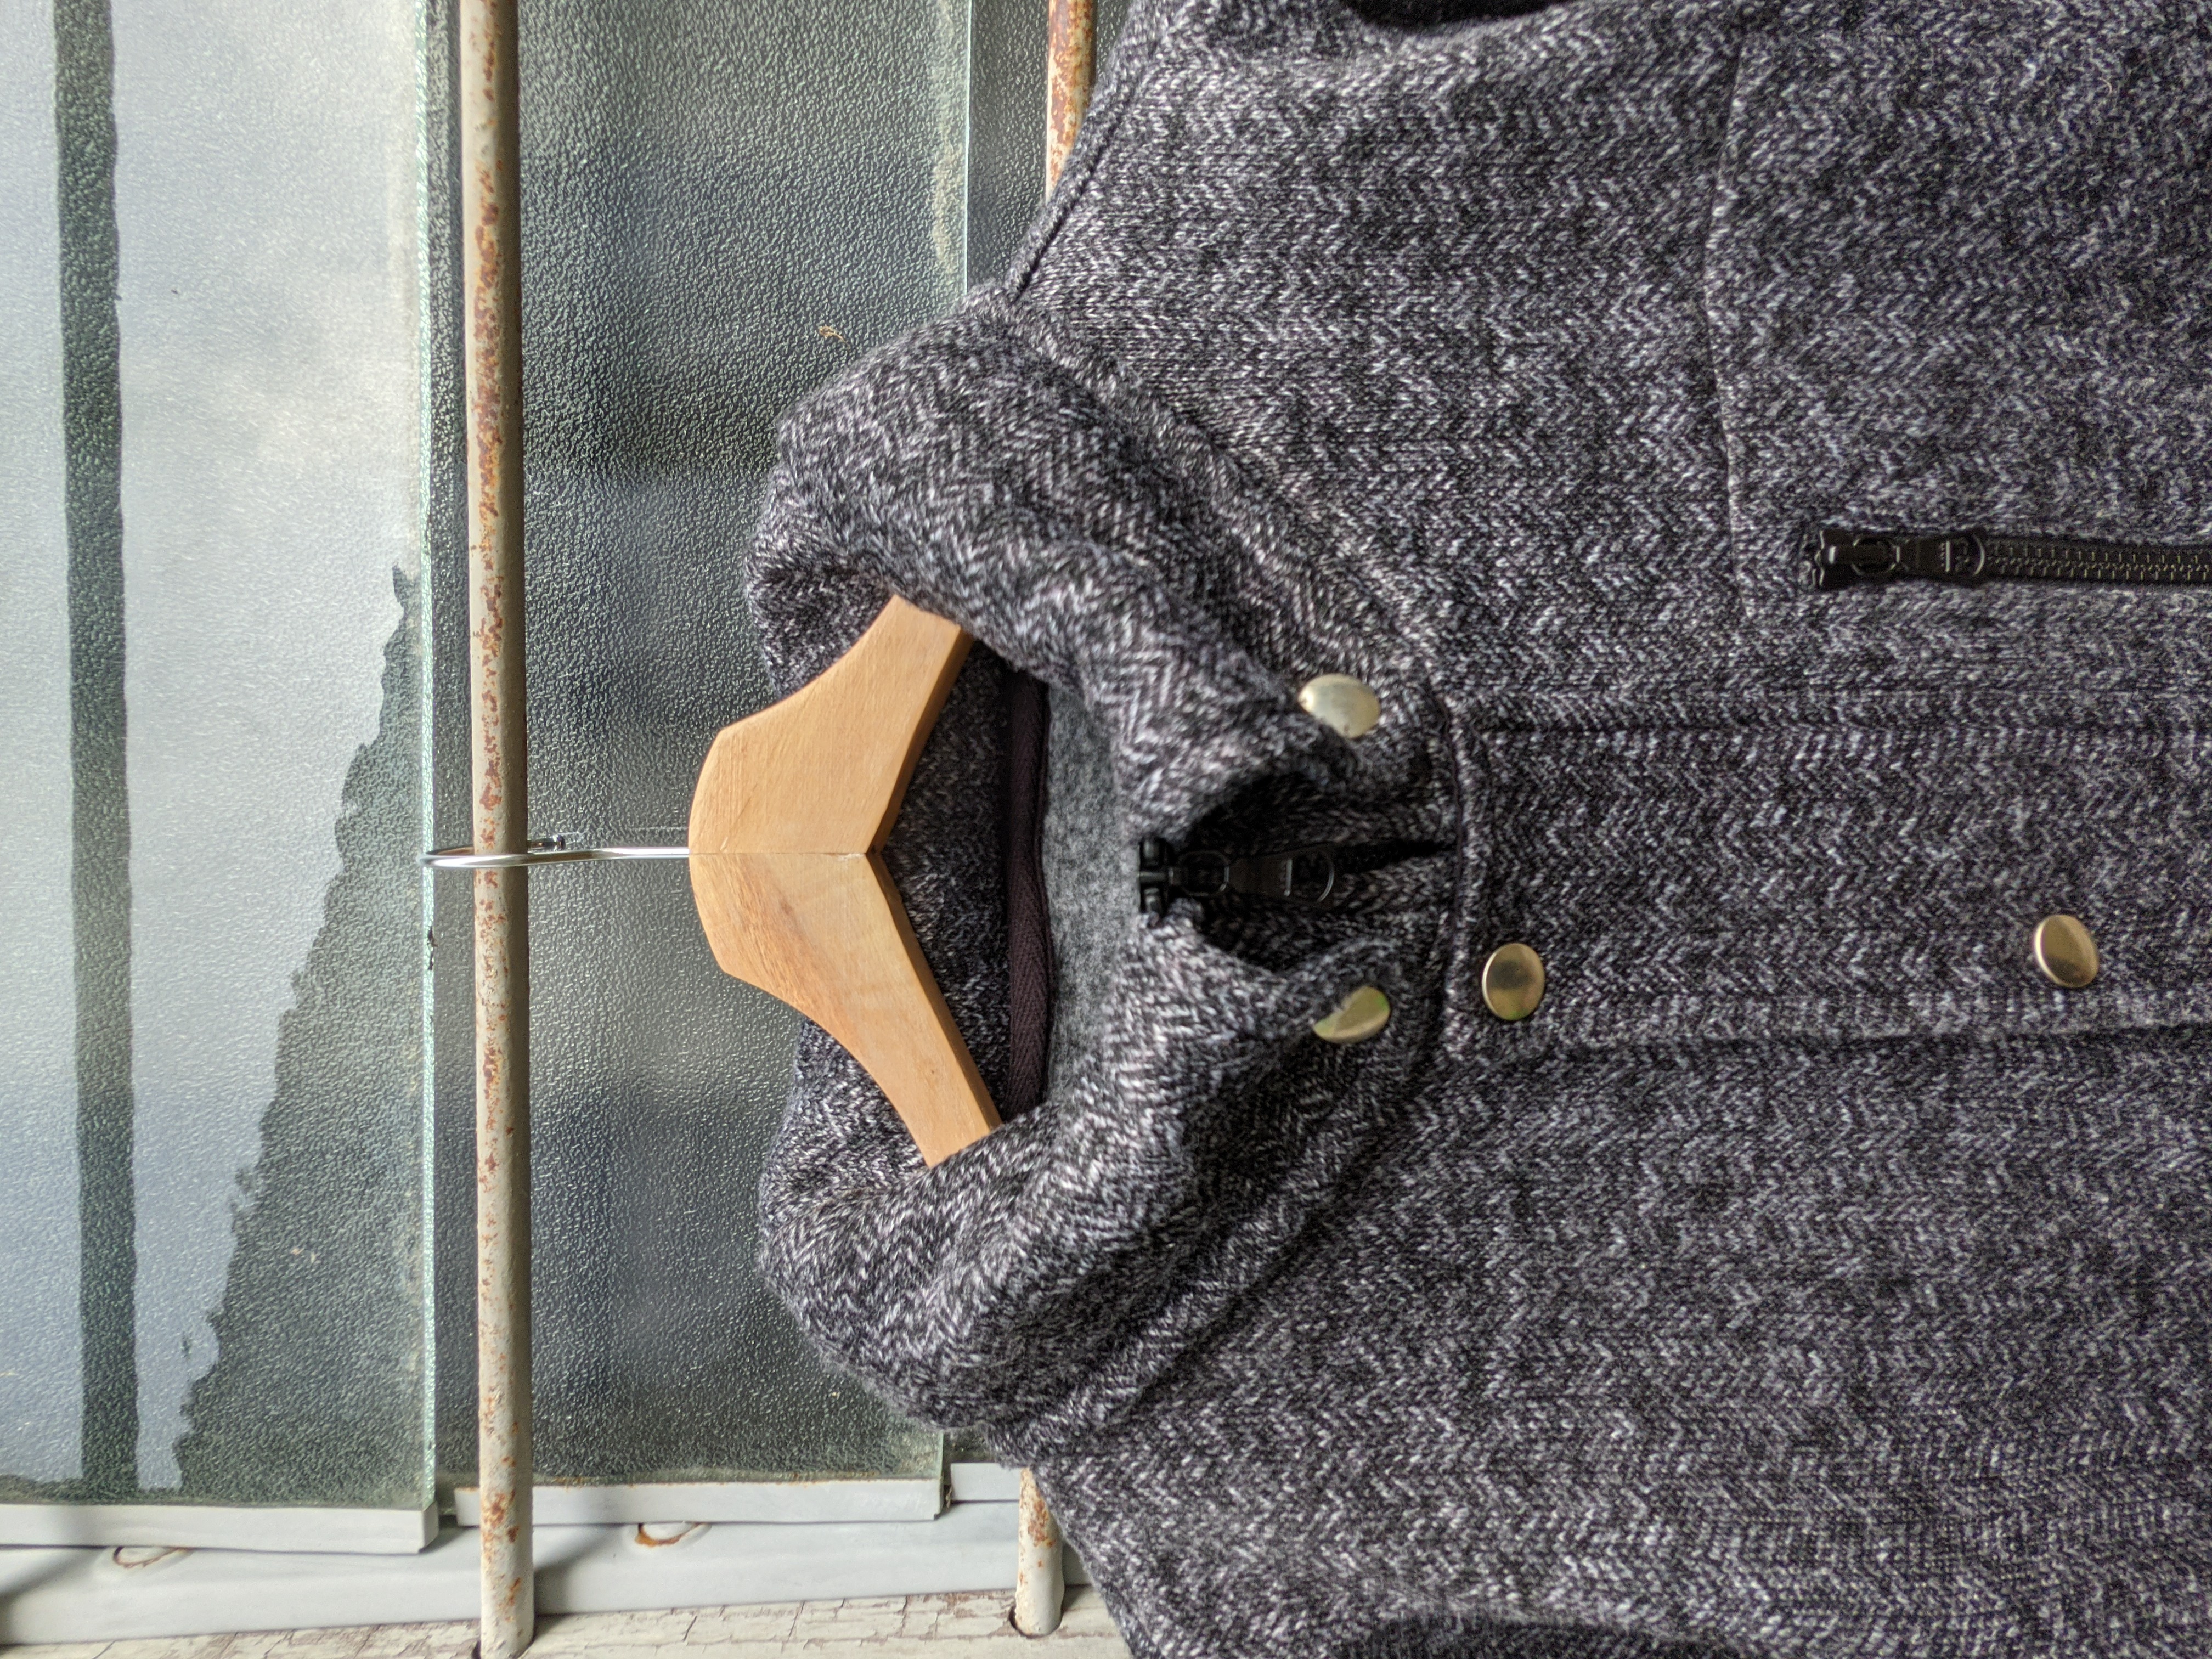 Other Designers Vintage - 🔥 STEALS 🔥 Vintage Wind Wize Cargo Vest Jacket, mix_store